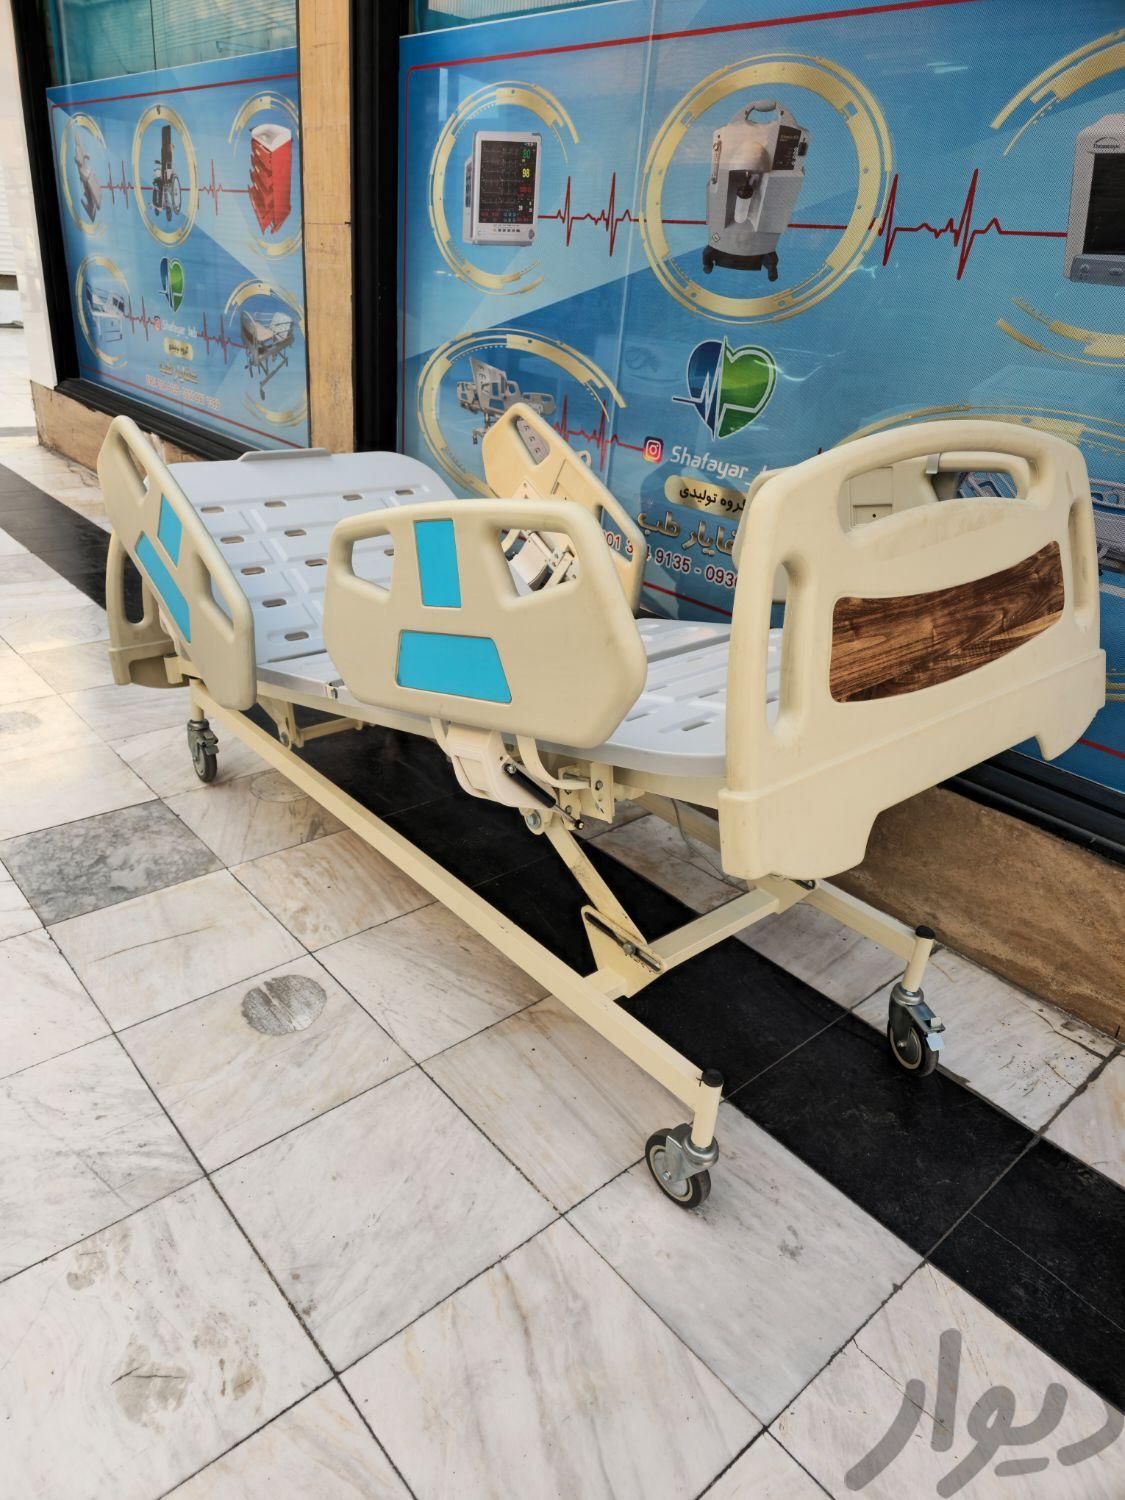 تولید تجهزات پزشکی بیمارستانی تخت بیمار برقی|وسایل آرایشی، بهداشتی و درمانی|تهران, تاکسیرانی|دیوار